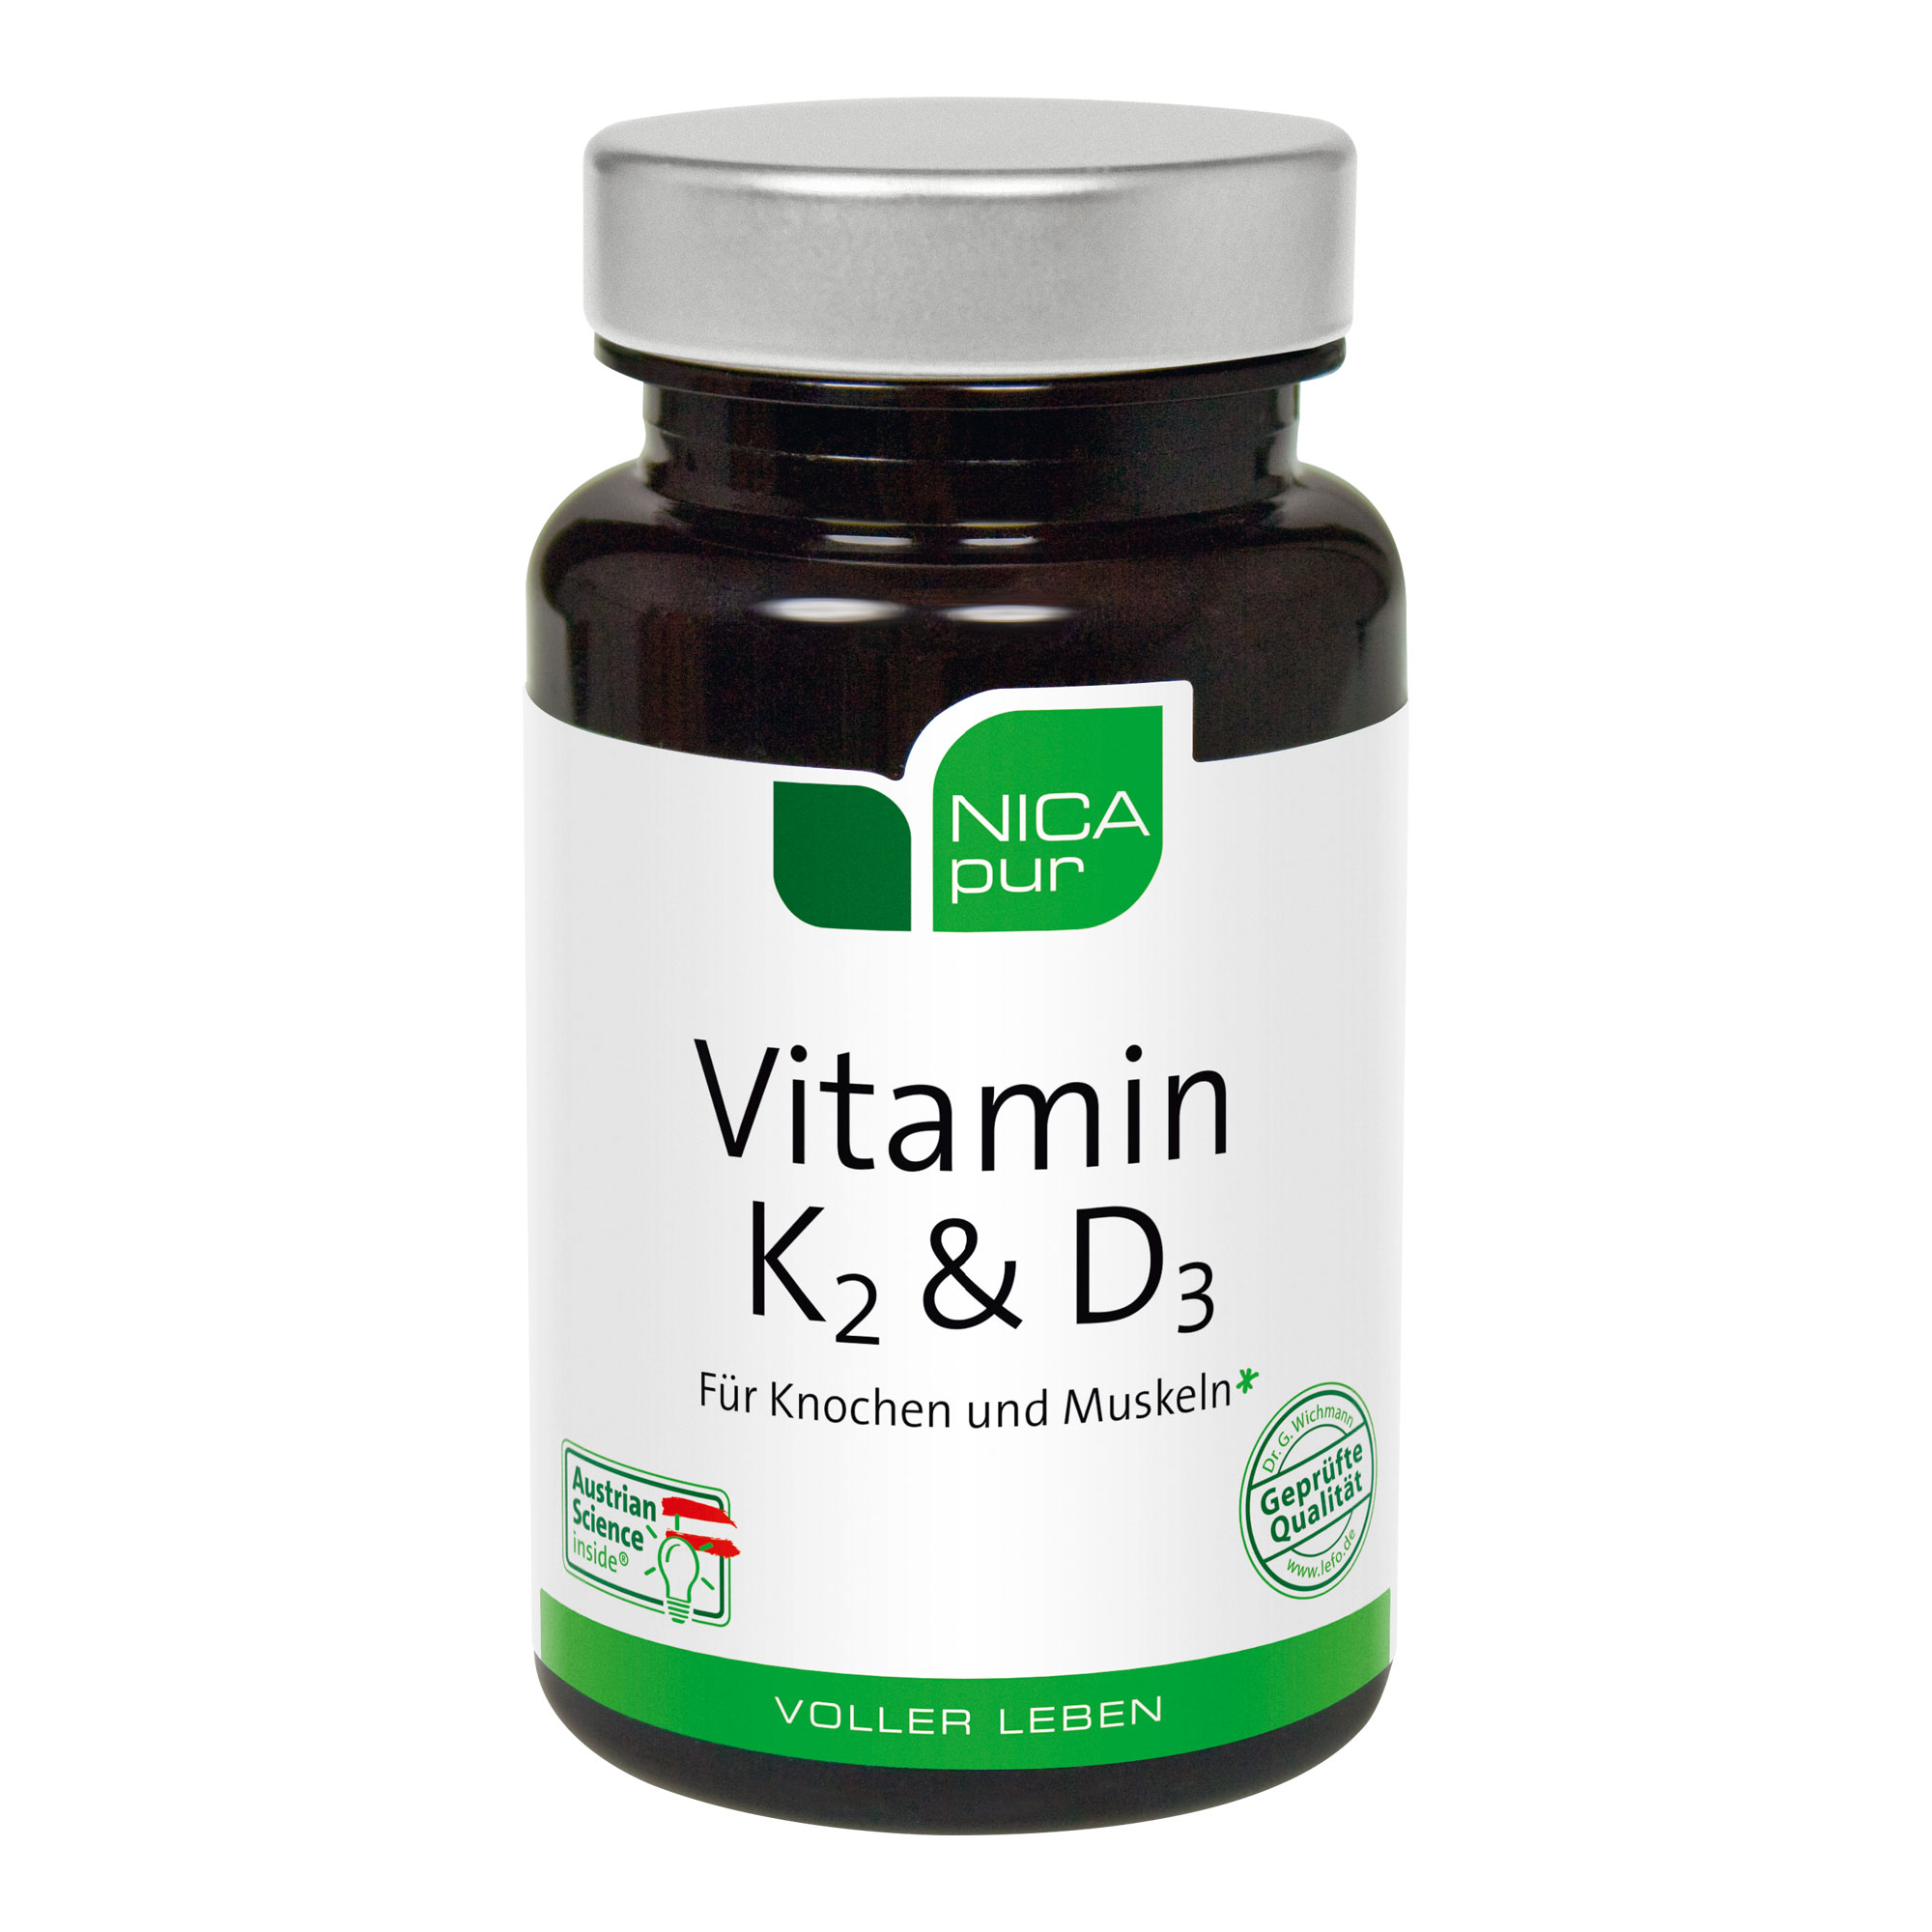 Nahrungsergänzungsmittel mit Vitamin K2 und Vitamin D3 in gut bioverfügbaren Formen sowie Magnesium.